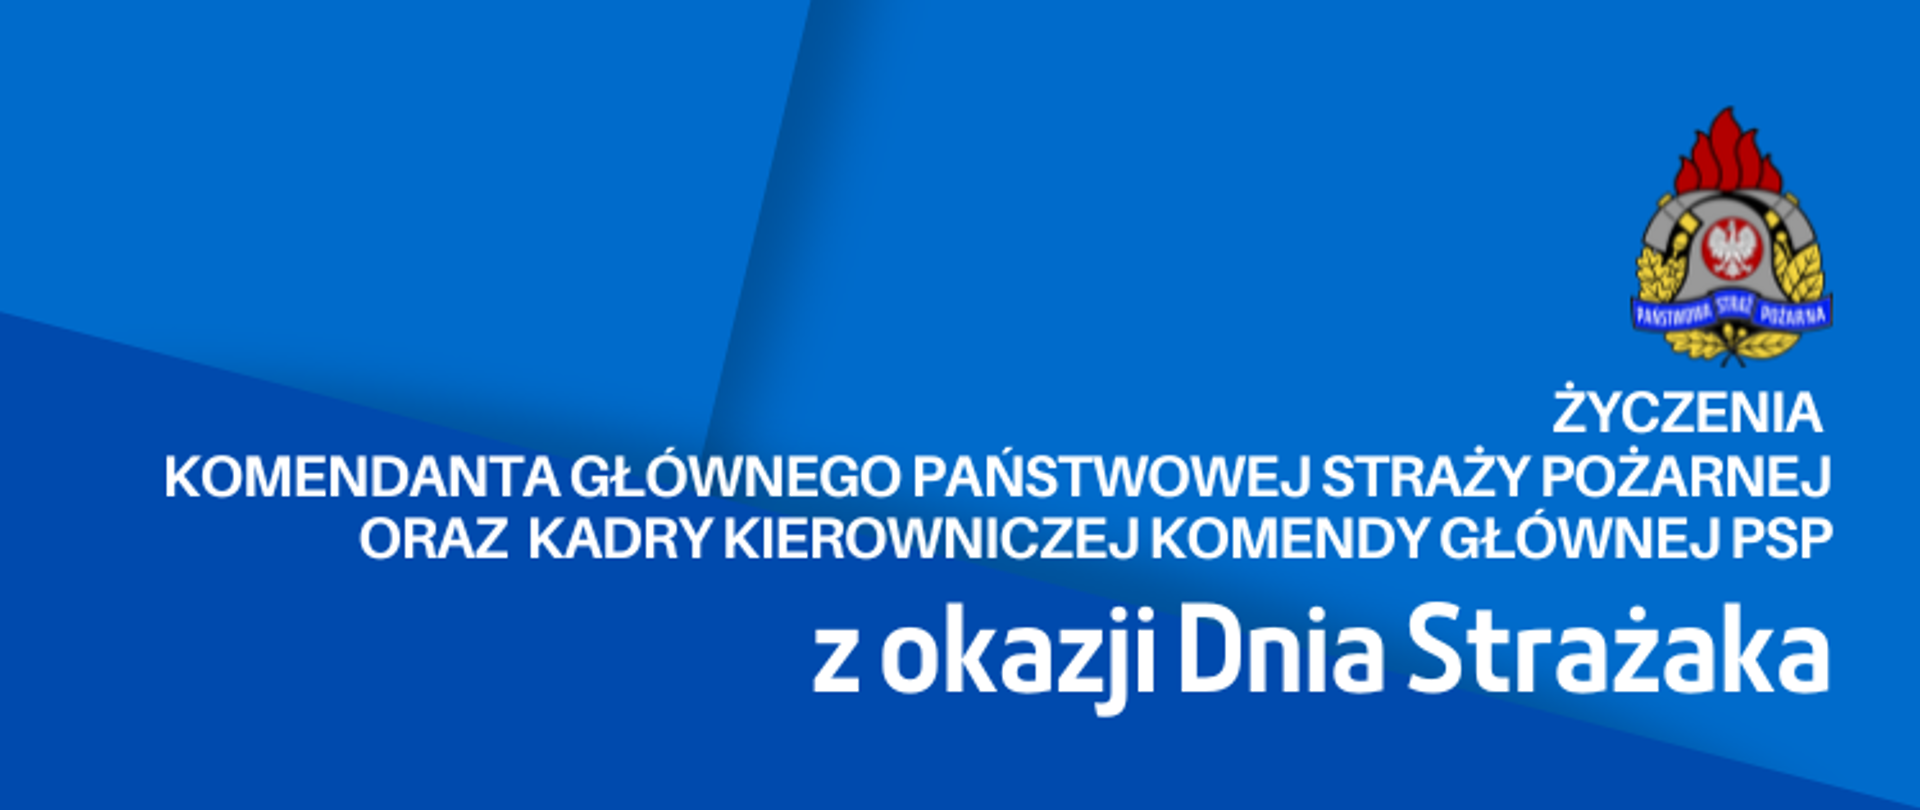 Życzenia Komendanta Głównego PSP z okazji Dnia Strażaka - banner